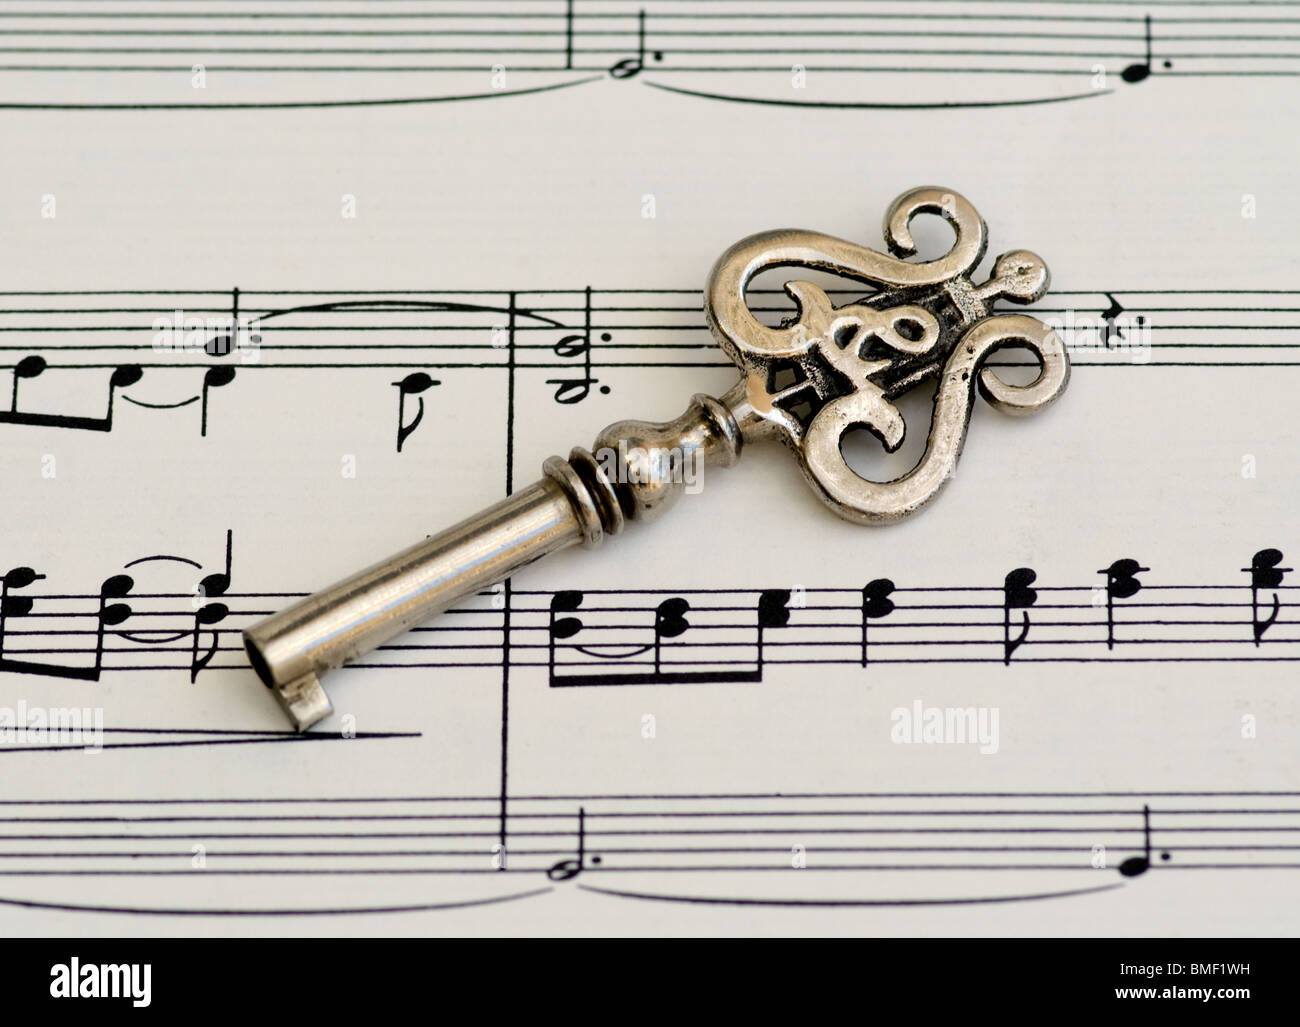 Klavierschlüssel oder alter Skelettschlüssel mit Lire- und Violinschlüssel-Design auf klassischen Noten. Dies ist eine Nahaufnahme, die musikalische Noten zeigt. Stockfoto